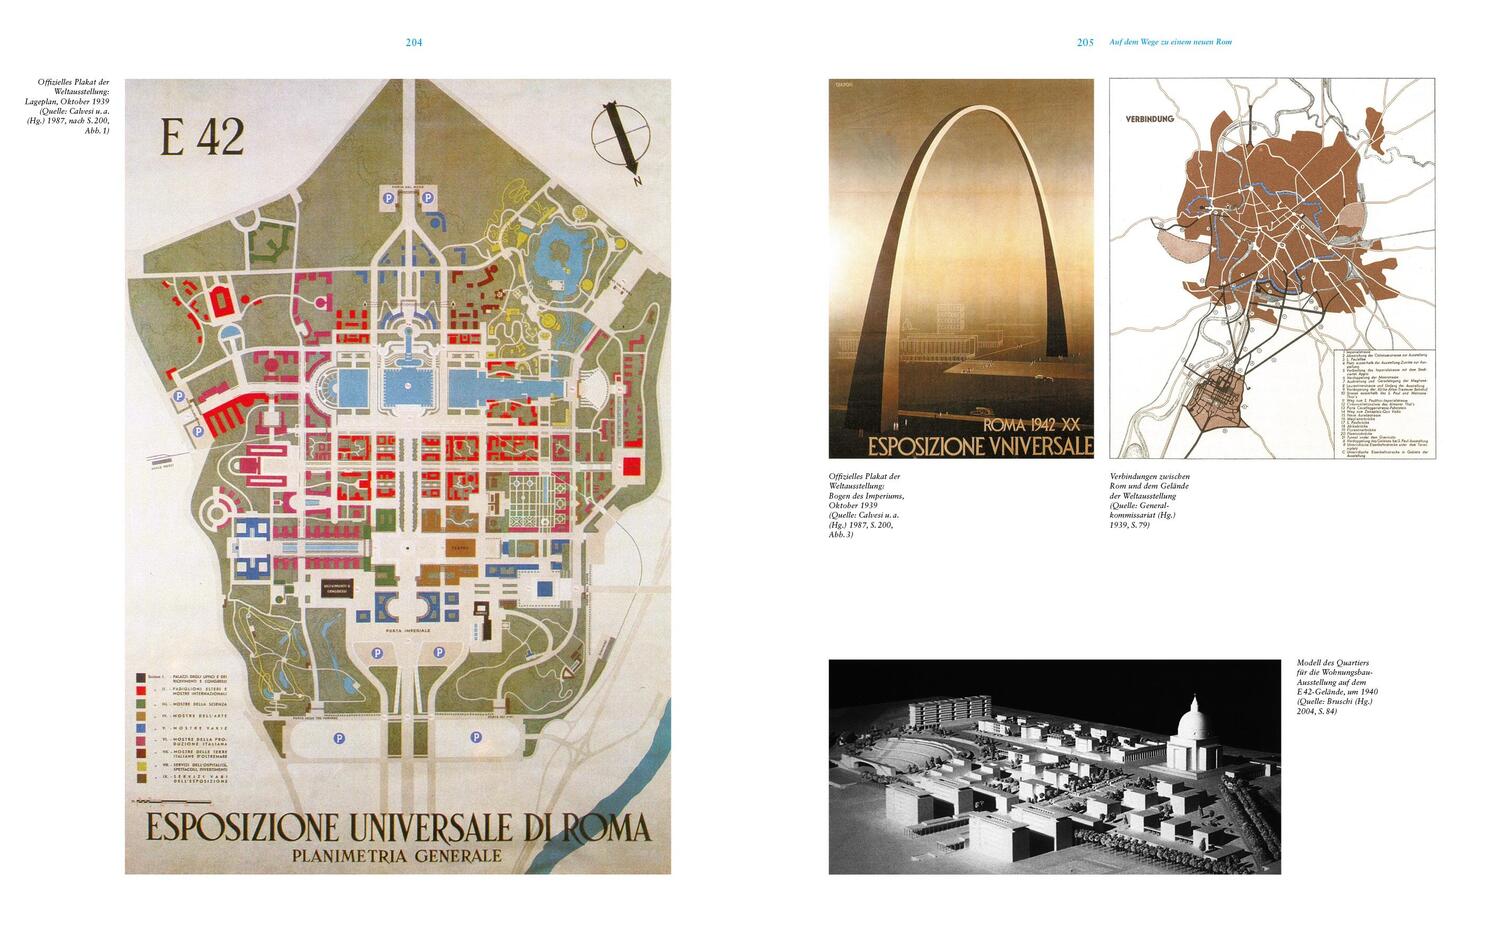 Bild: 9783869228273 | Städtebau für Mussolini | Harald Bodenschatz (u. a.) | Buch | 552 S.